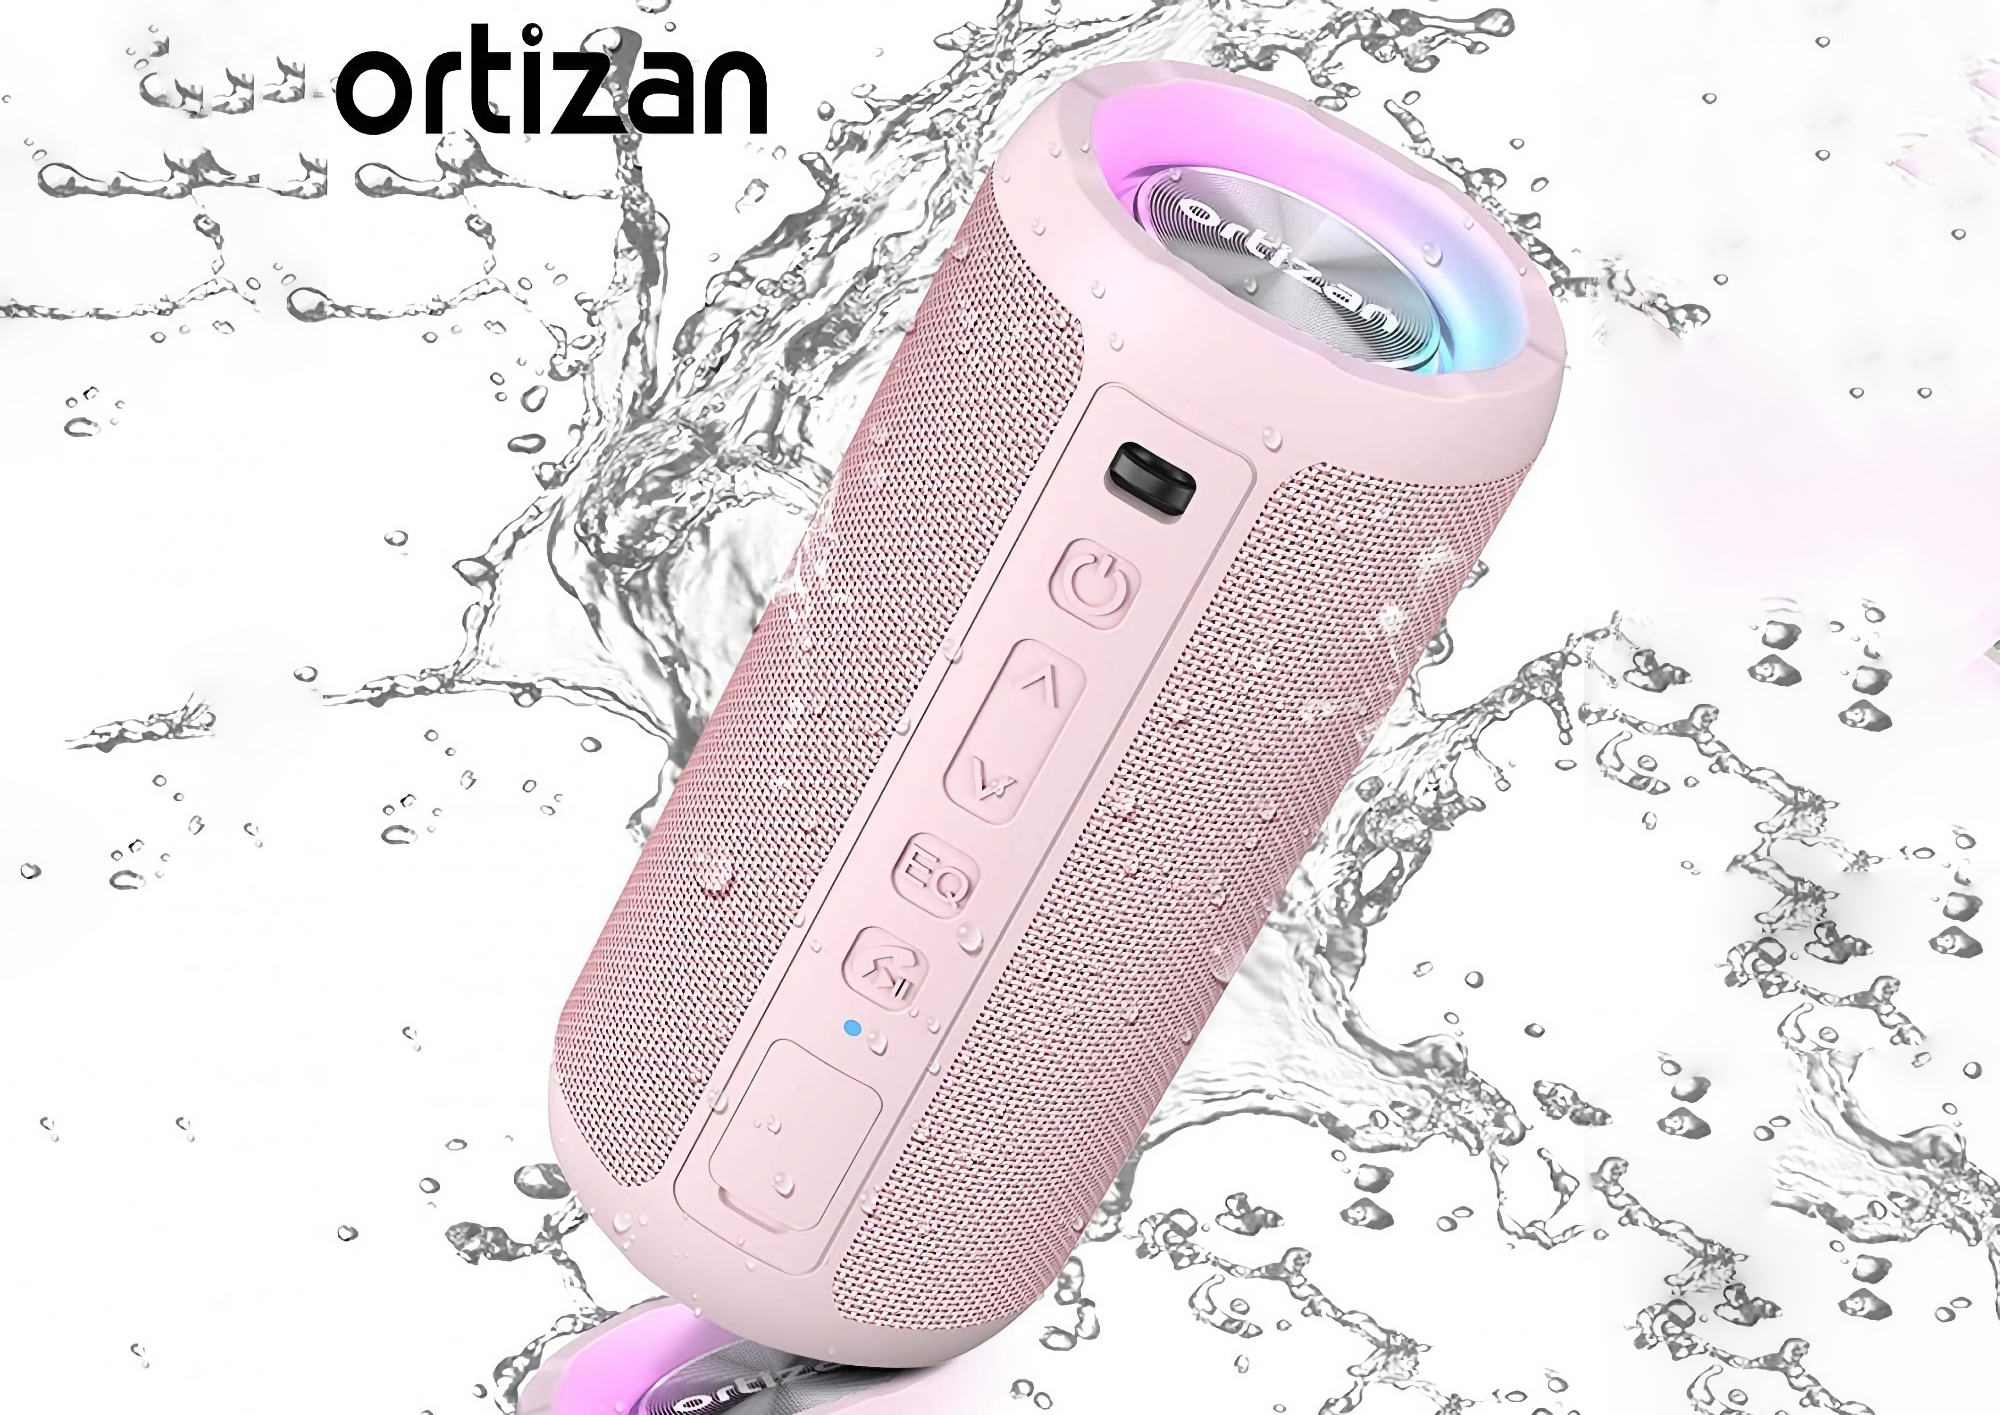 Ortizan X10 sur Amazon : Enceinte sans fil avec éclairage RVB, protection IPX7 et jusqu'à 30 heures d'autonomie pour 19 $ de réduction.